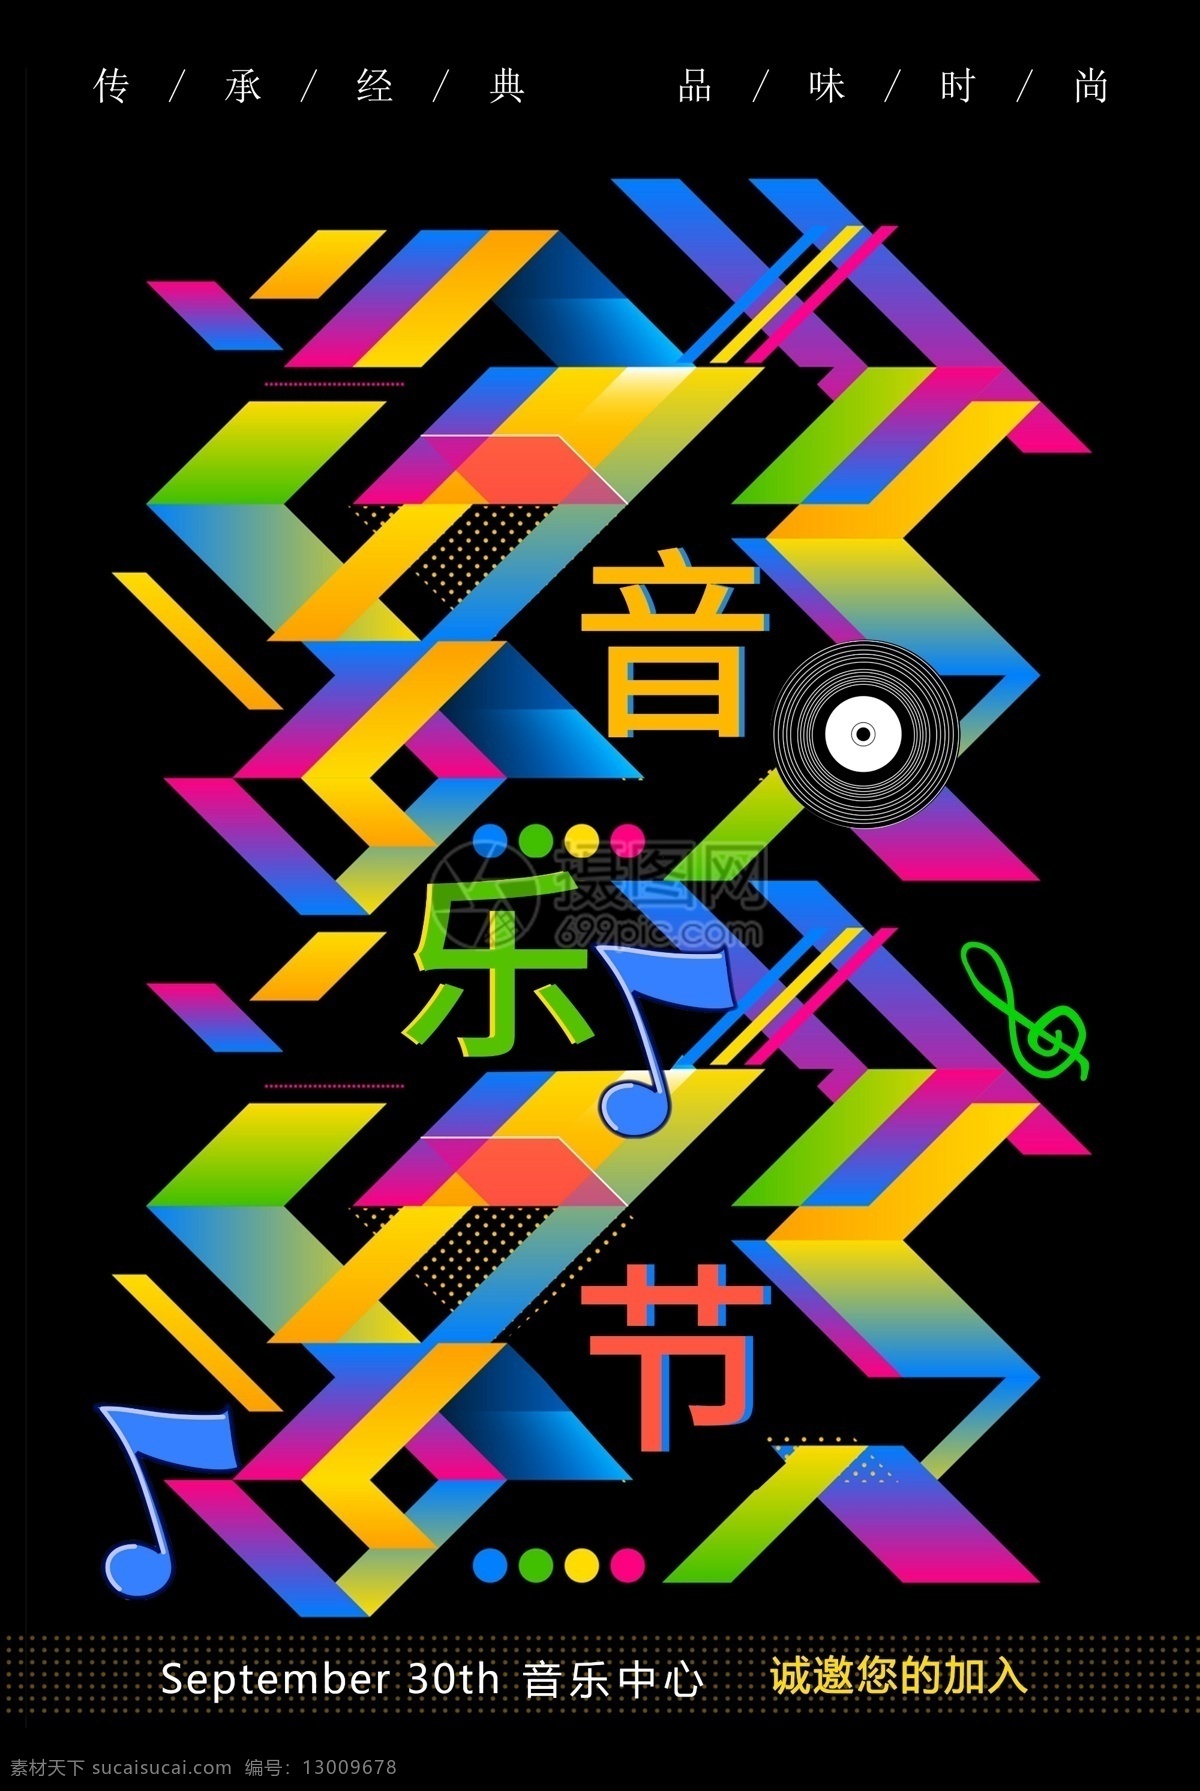 动感 炫彩 音乐节 海报 黑色背景海报 音乐会 演奏会 视听 时尚 大气 音乐节海报